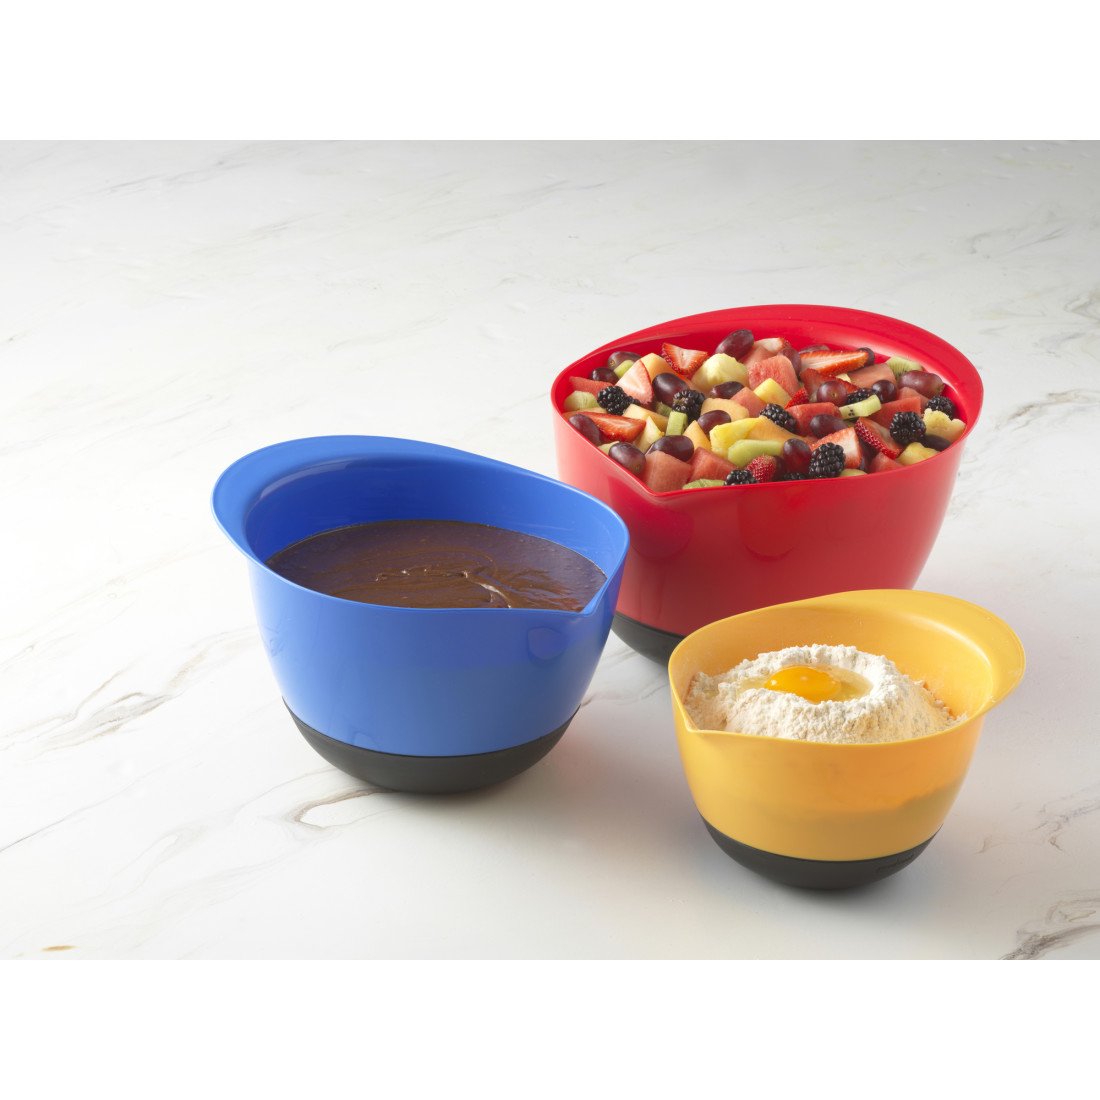 Cocinaware Nested Mixing Bowls - Shop Mixing Bowls at H-E-B